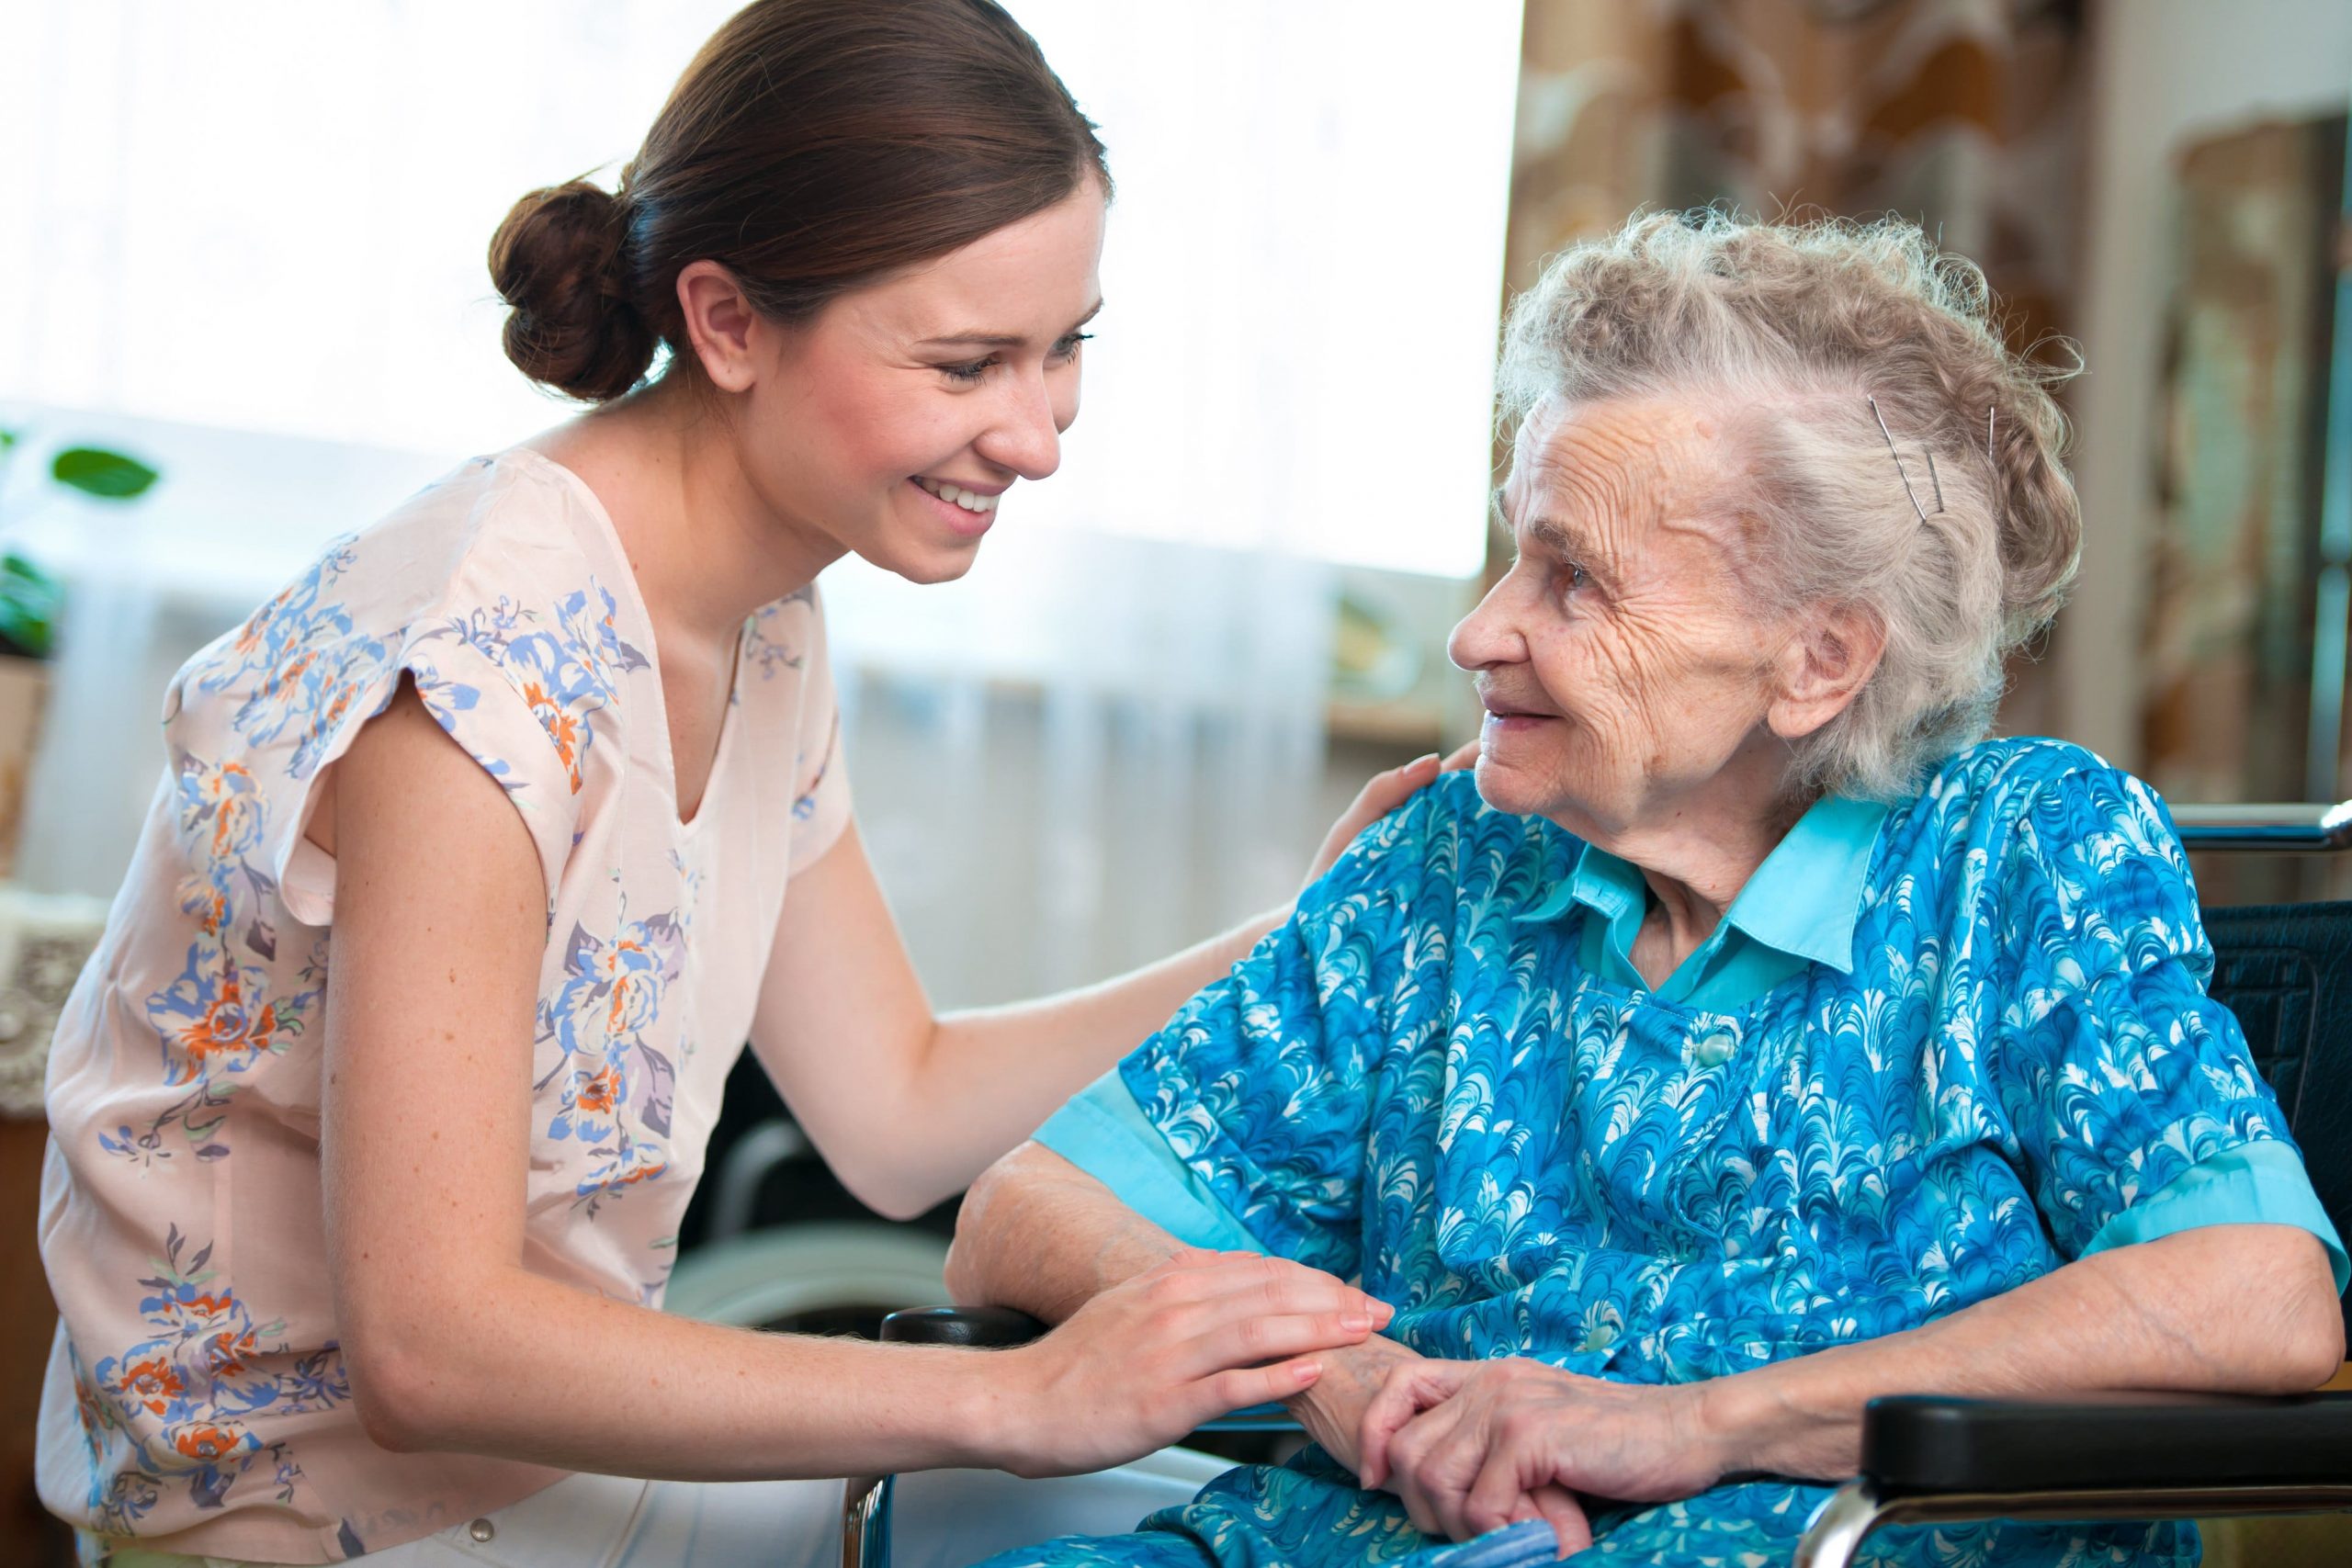 O mindfulness traz efeitos positivos no envelhecimento e como cultivar a atenção plena para quem é cuidador de idosos.